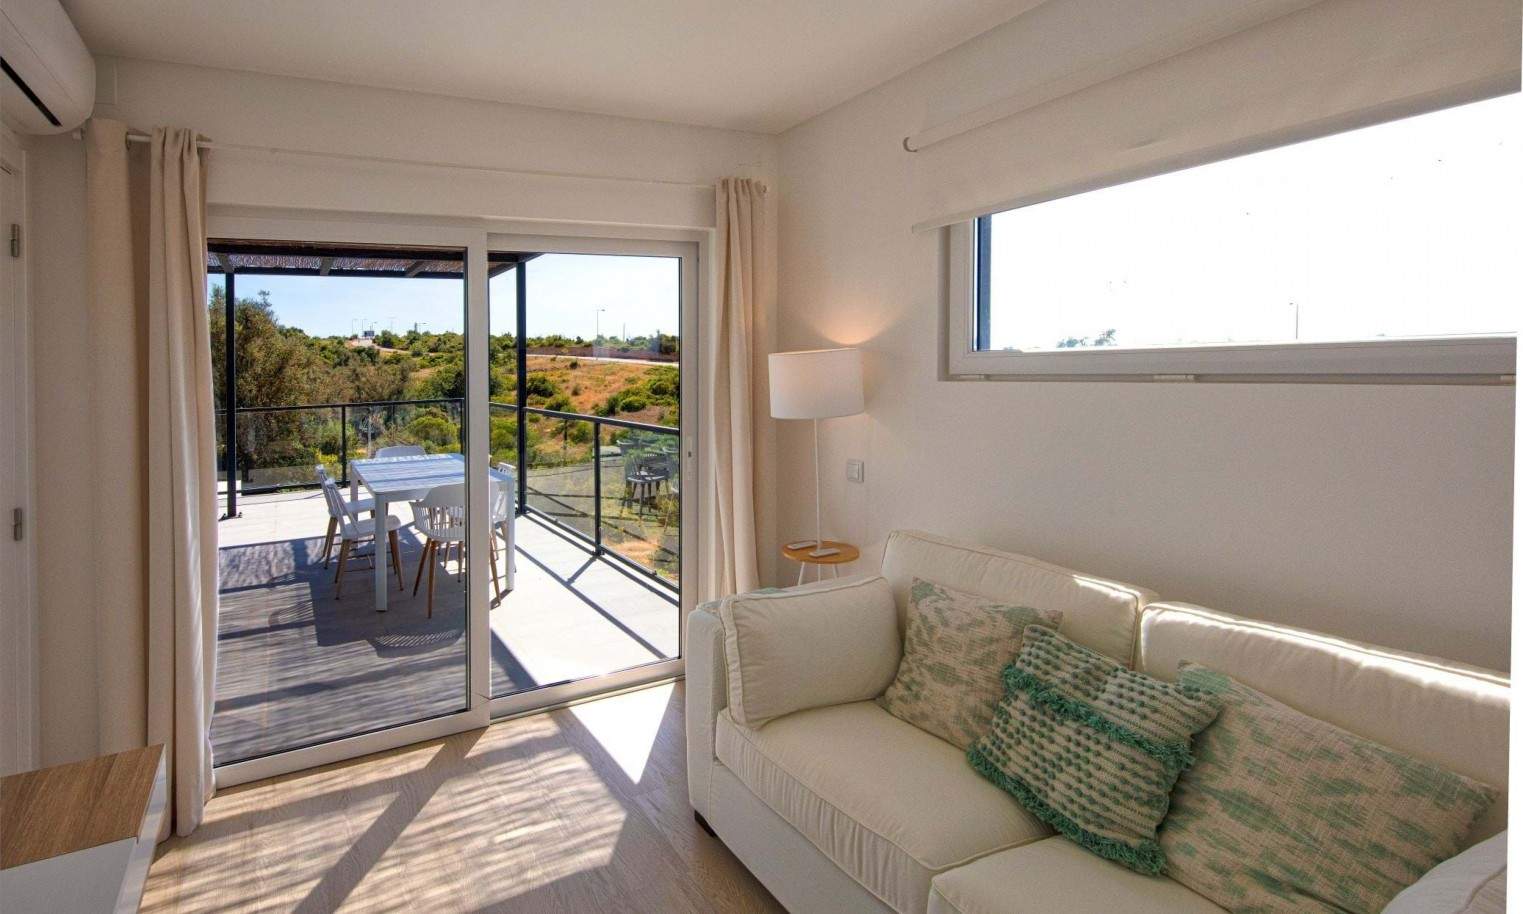 Moradia V2+1 em resort, para venda em Carvoeiro, Algarve_204869